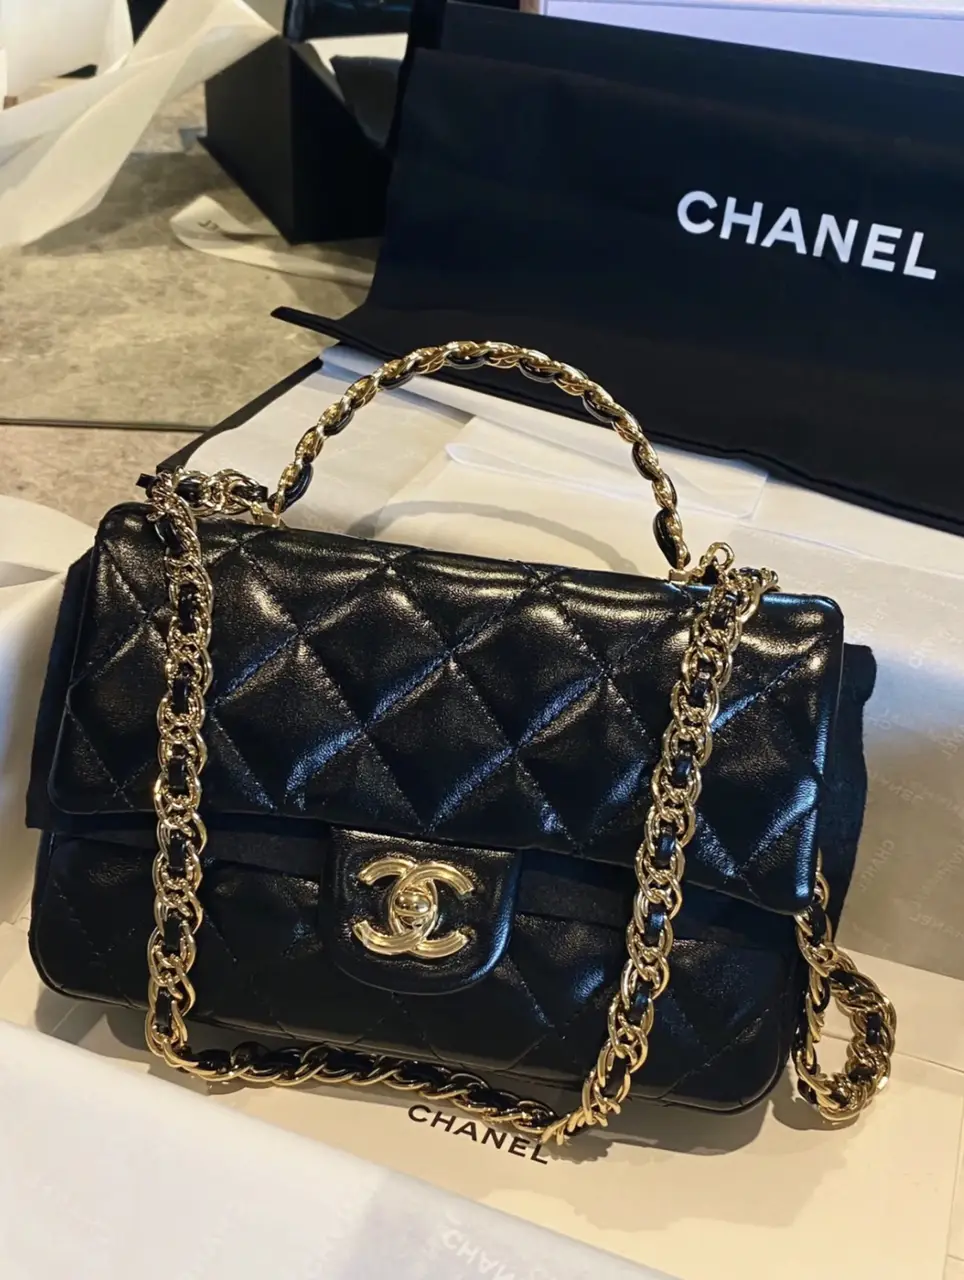 Chanel 23s CFmini Dream Love bag 💼 🥰, Gallery posted by Planetttttt